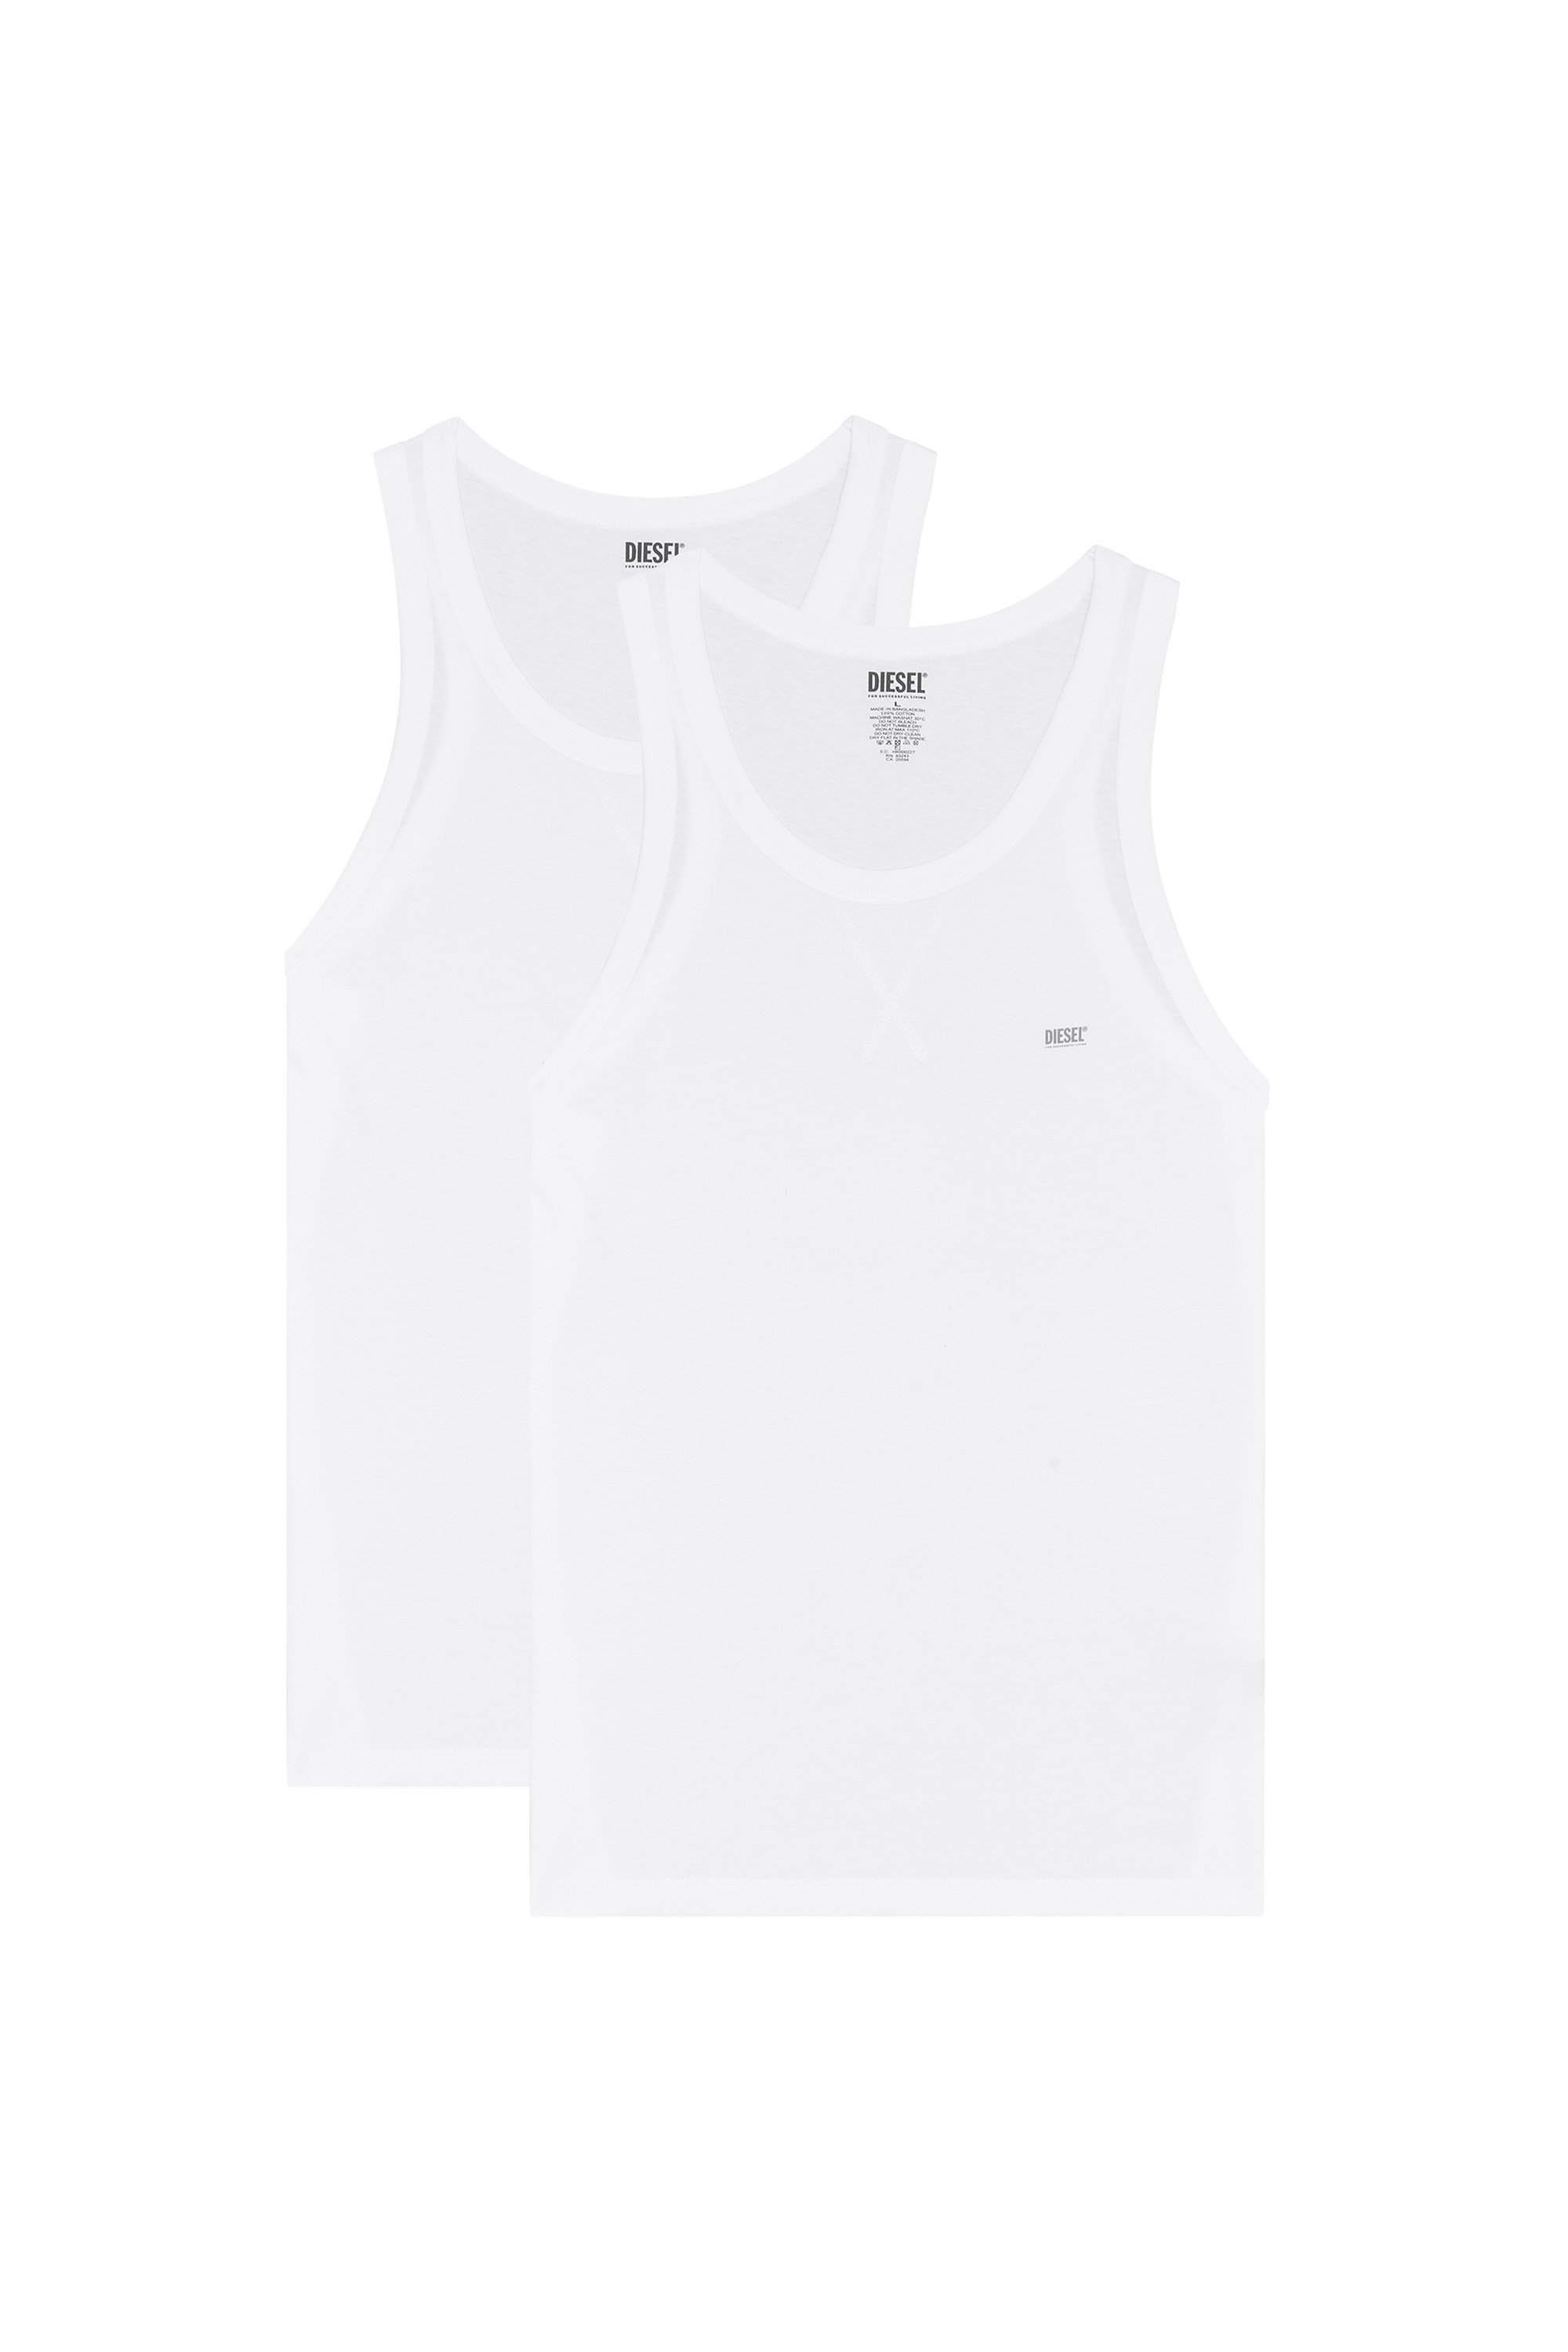 Diesel - UMTK-WALTYTWOPACK, Hombre Paquete de dos camisetas de tirantes de algodón in Blanco - Image 1